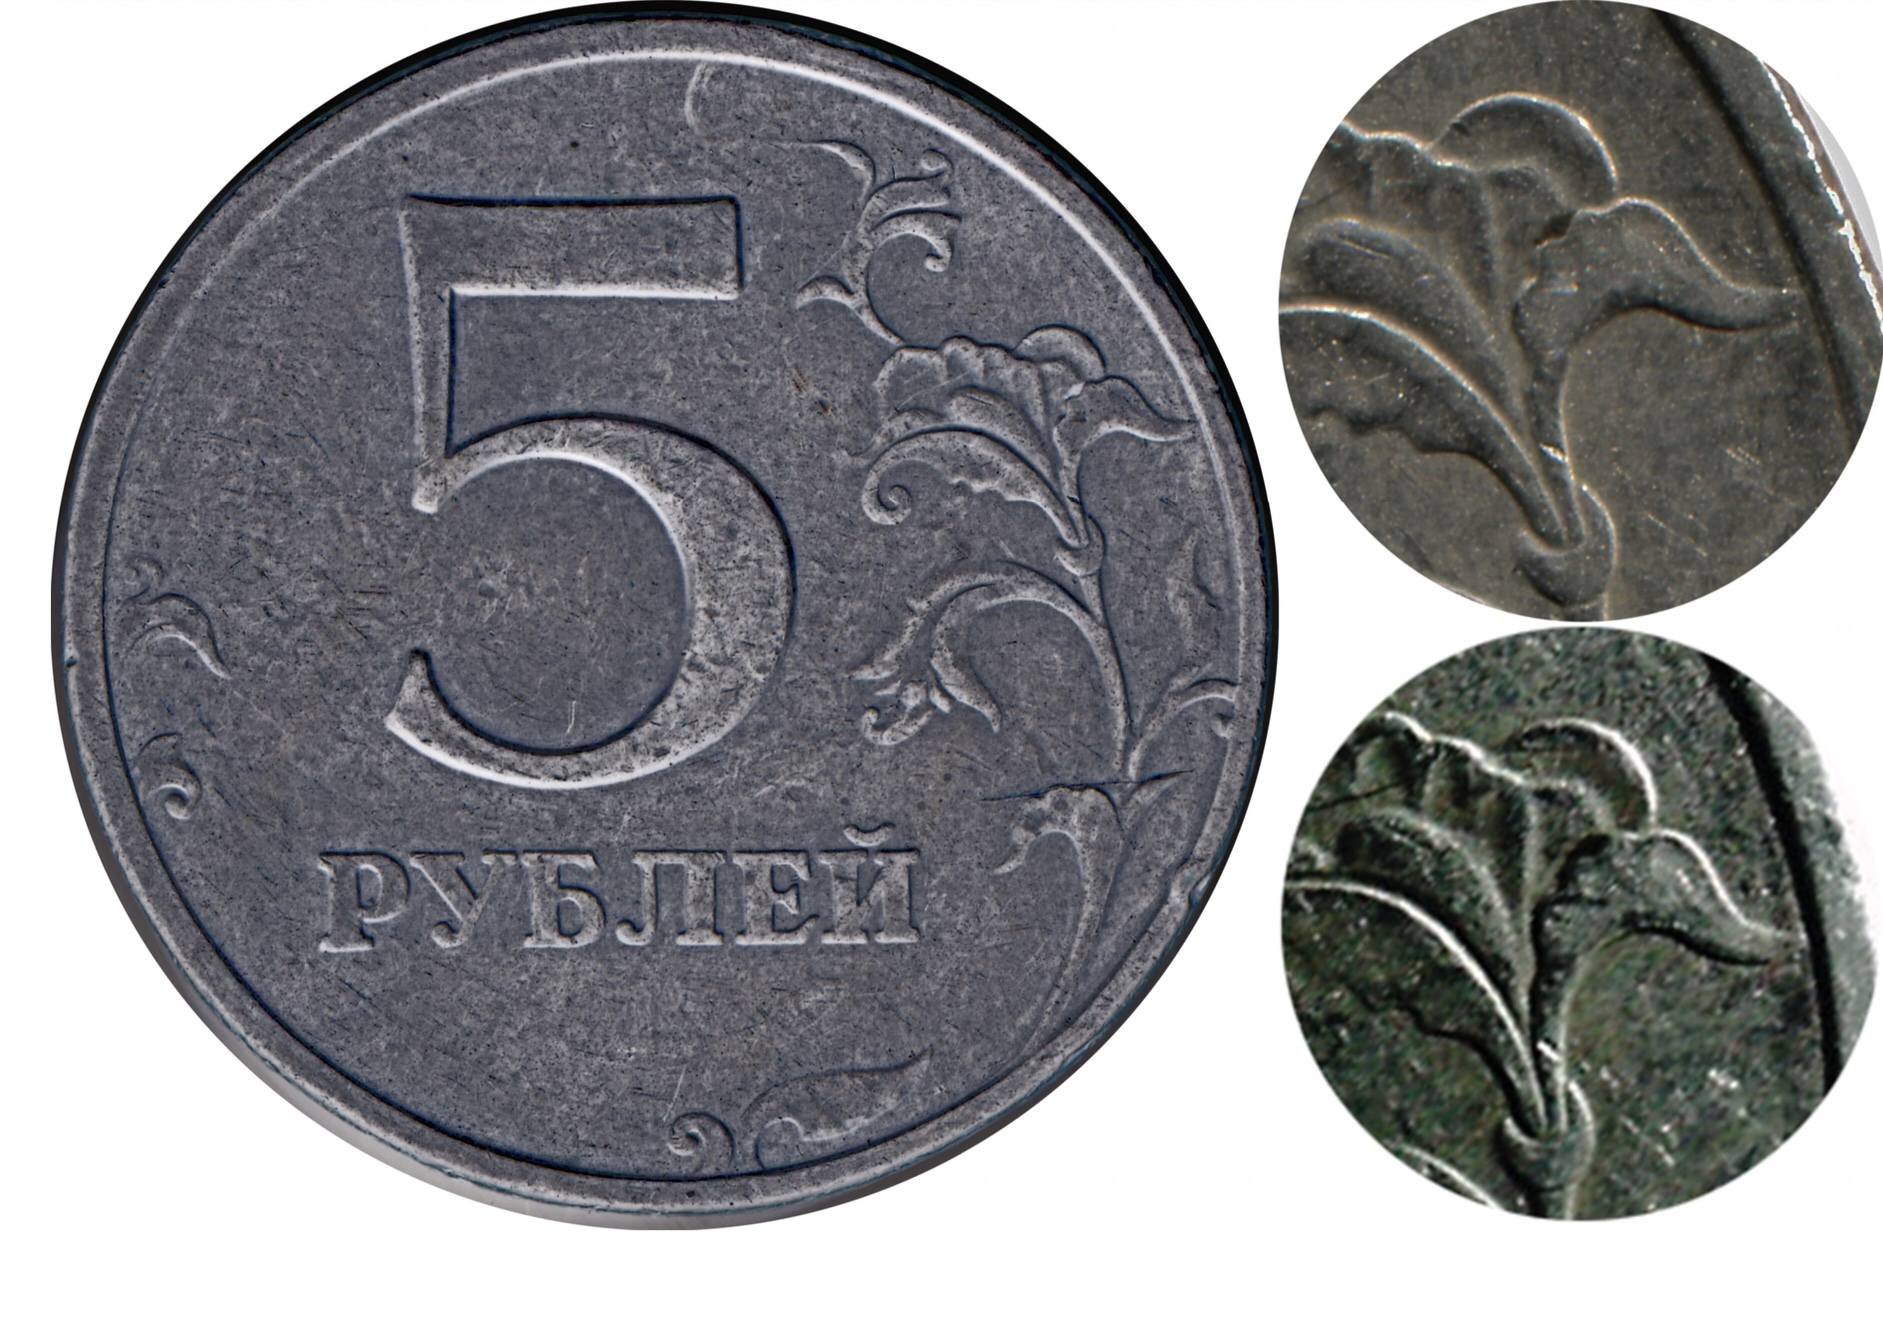 Наличные 5 рублей. 5 Рублей 1997 ММД. 5 Рубль 1997 Монетка. Редкие монеты 5 рублей 1997 ММД. Редкая монета 5 рублей 1997 года.